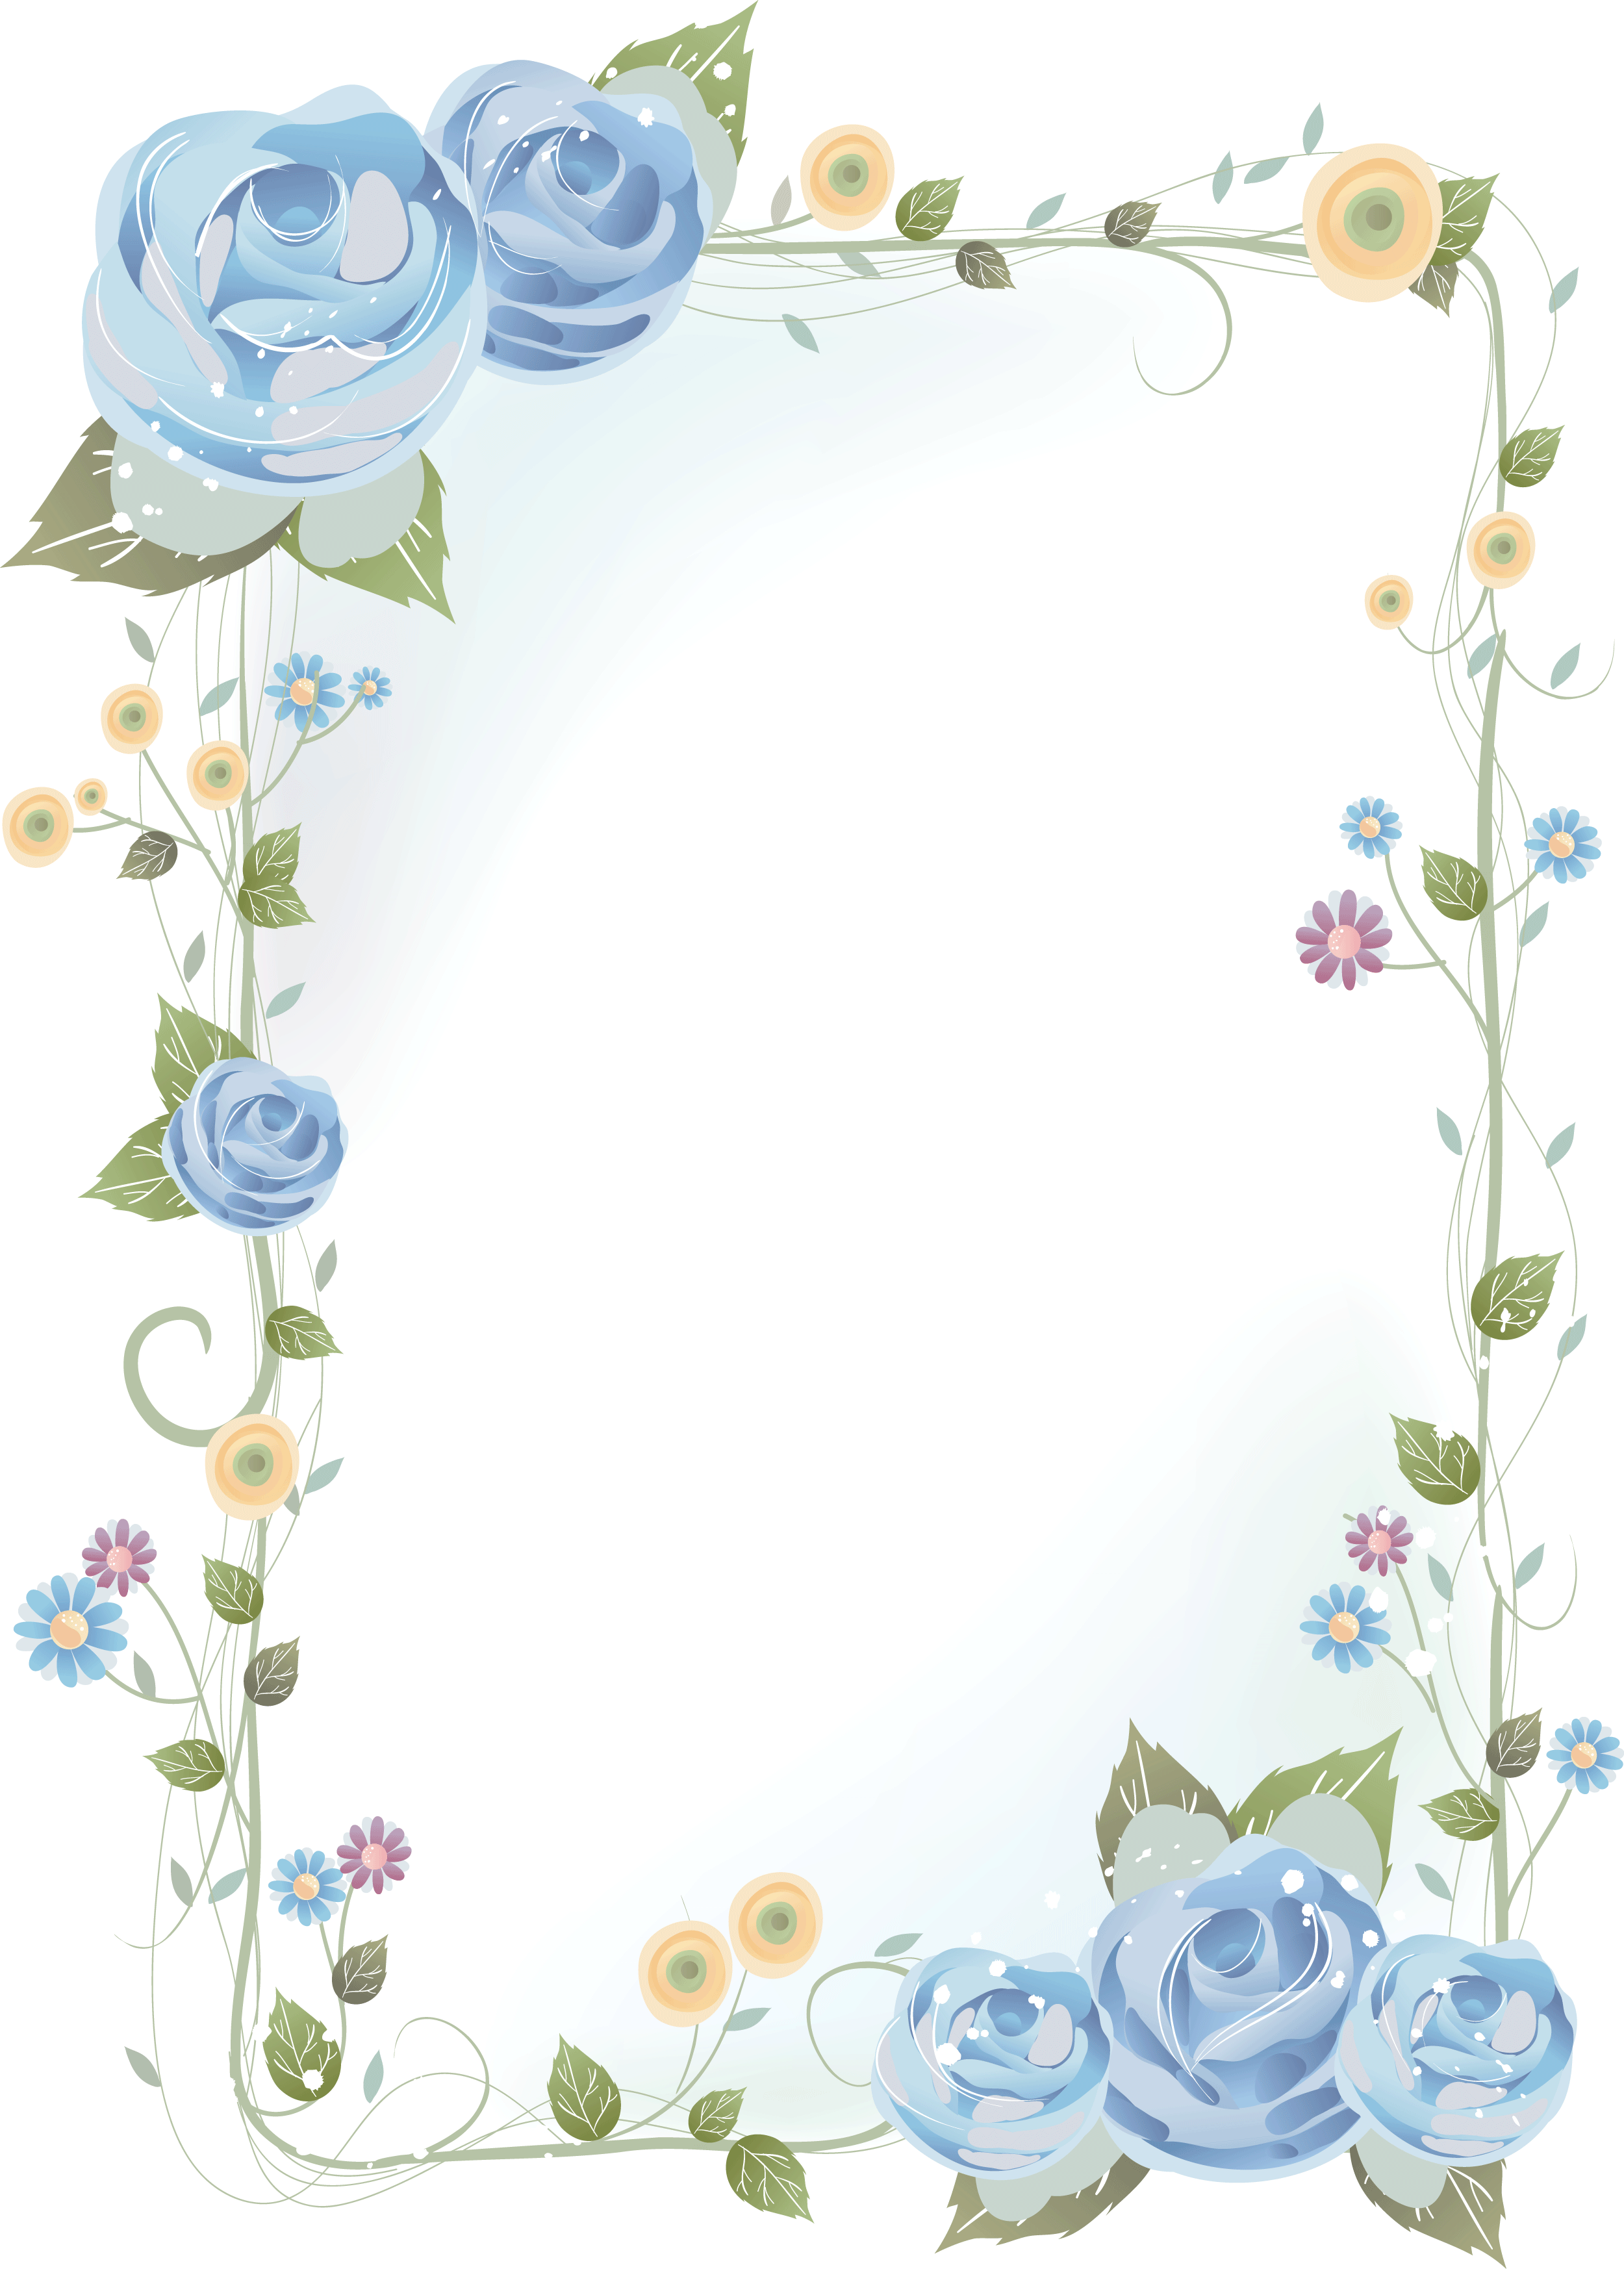 壁紙 背景イラスト 花のフレーム 外枠 No 121 青いバラ 茎葉